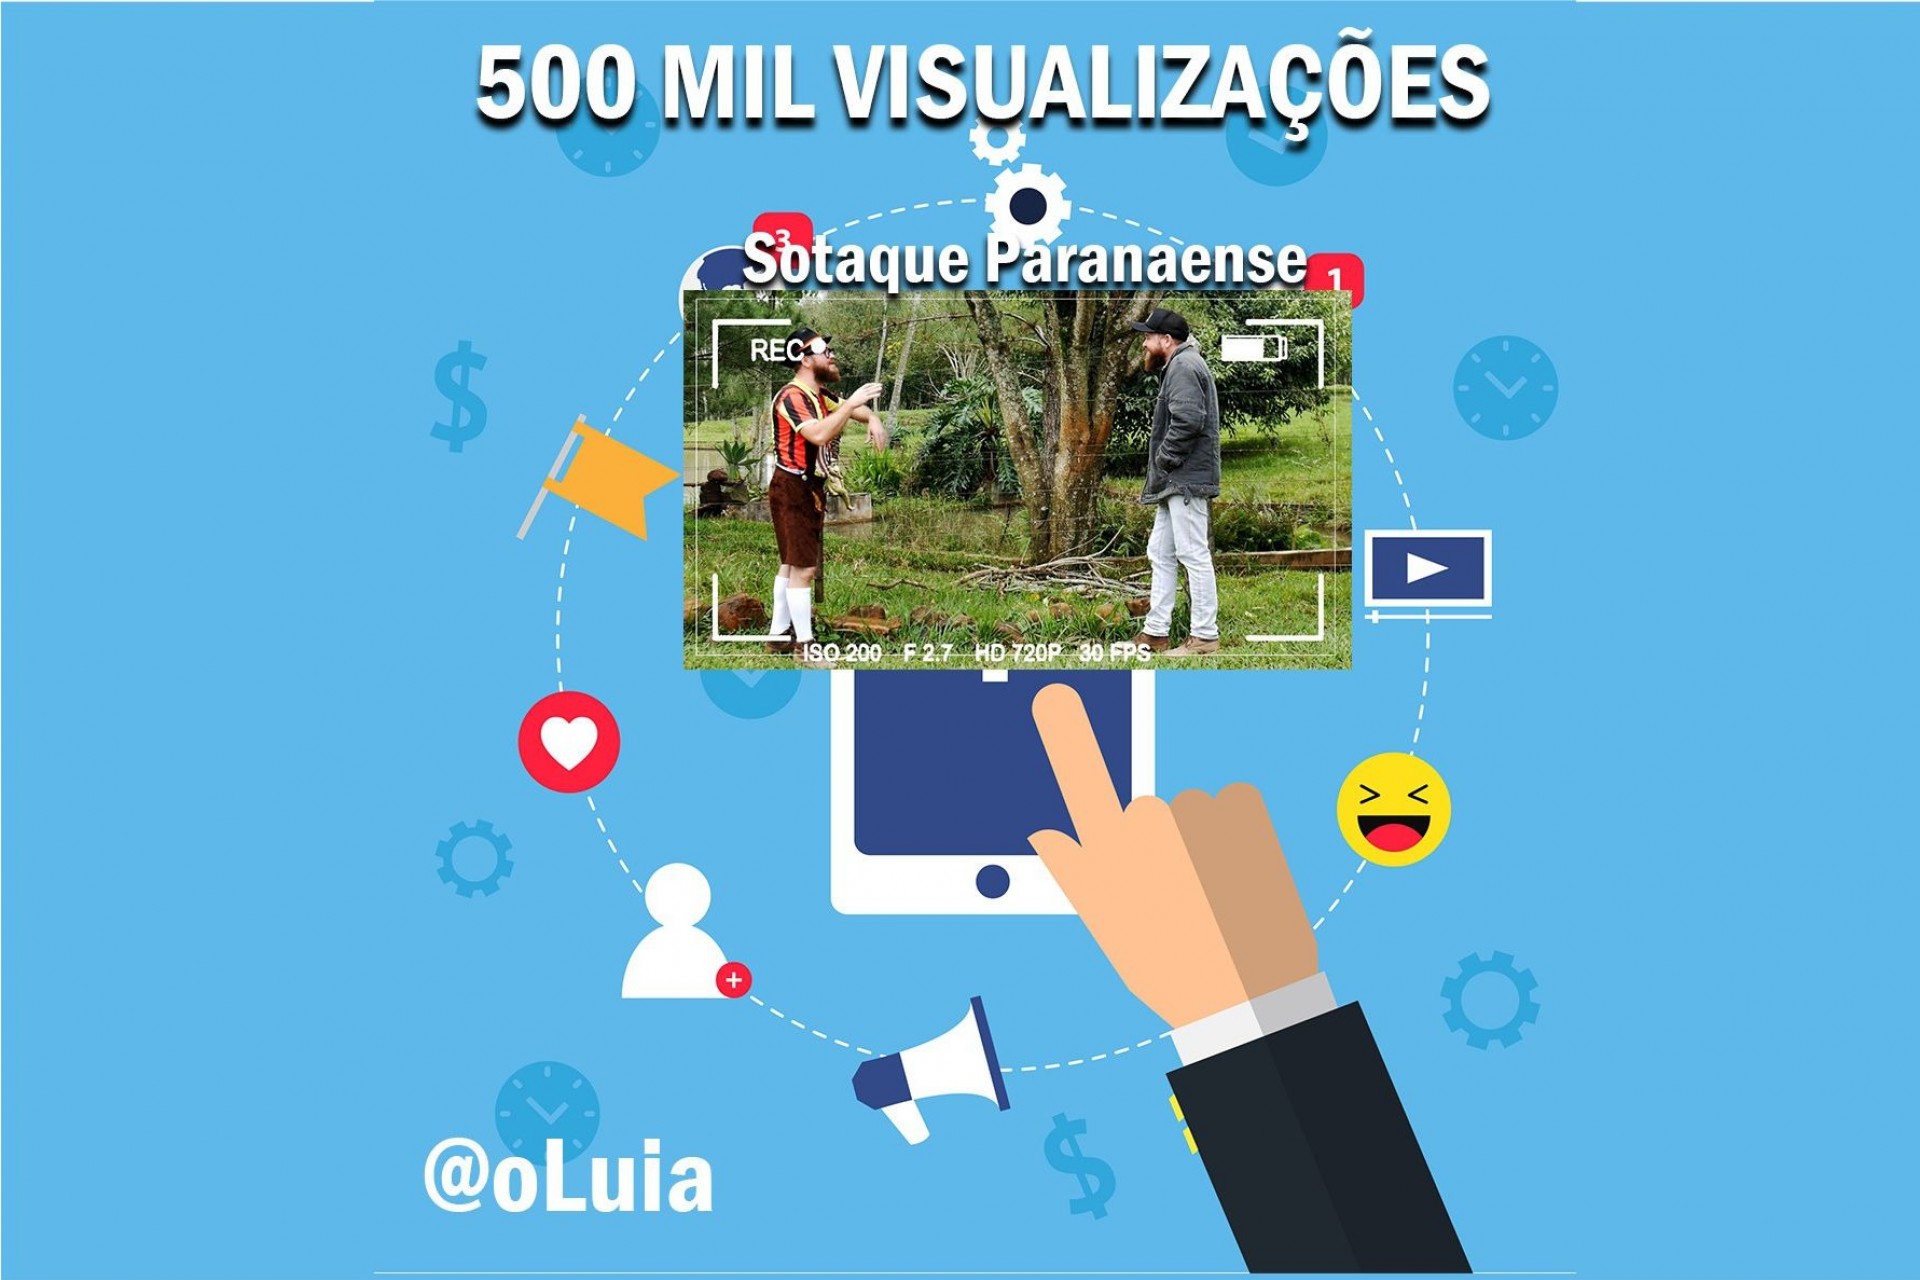 Luia, um alemão de Missal - O vídeo Sotaque Paranaense ultrapassou a marca de 500 mil visualizações